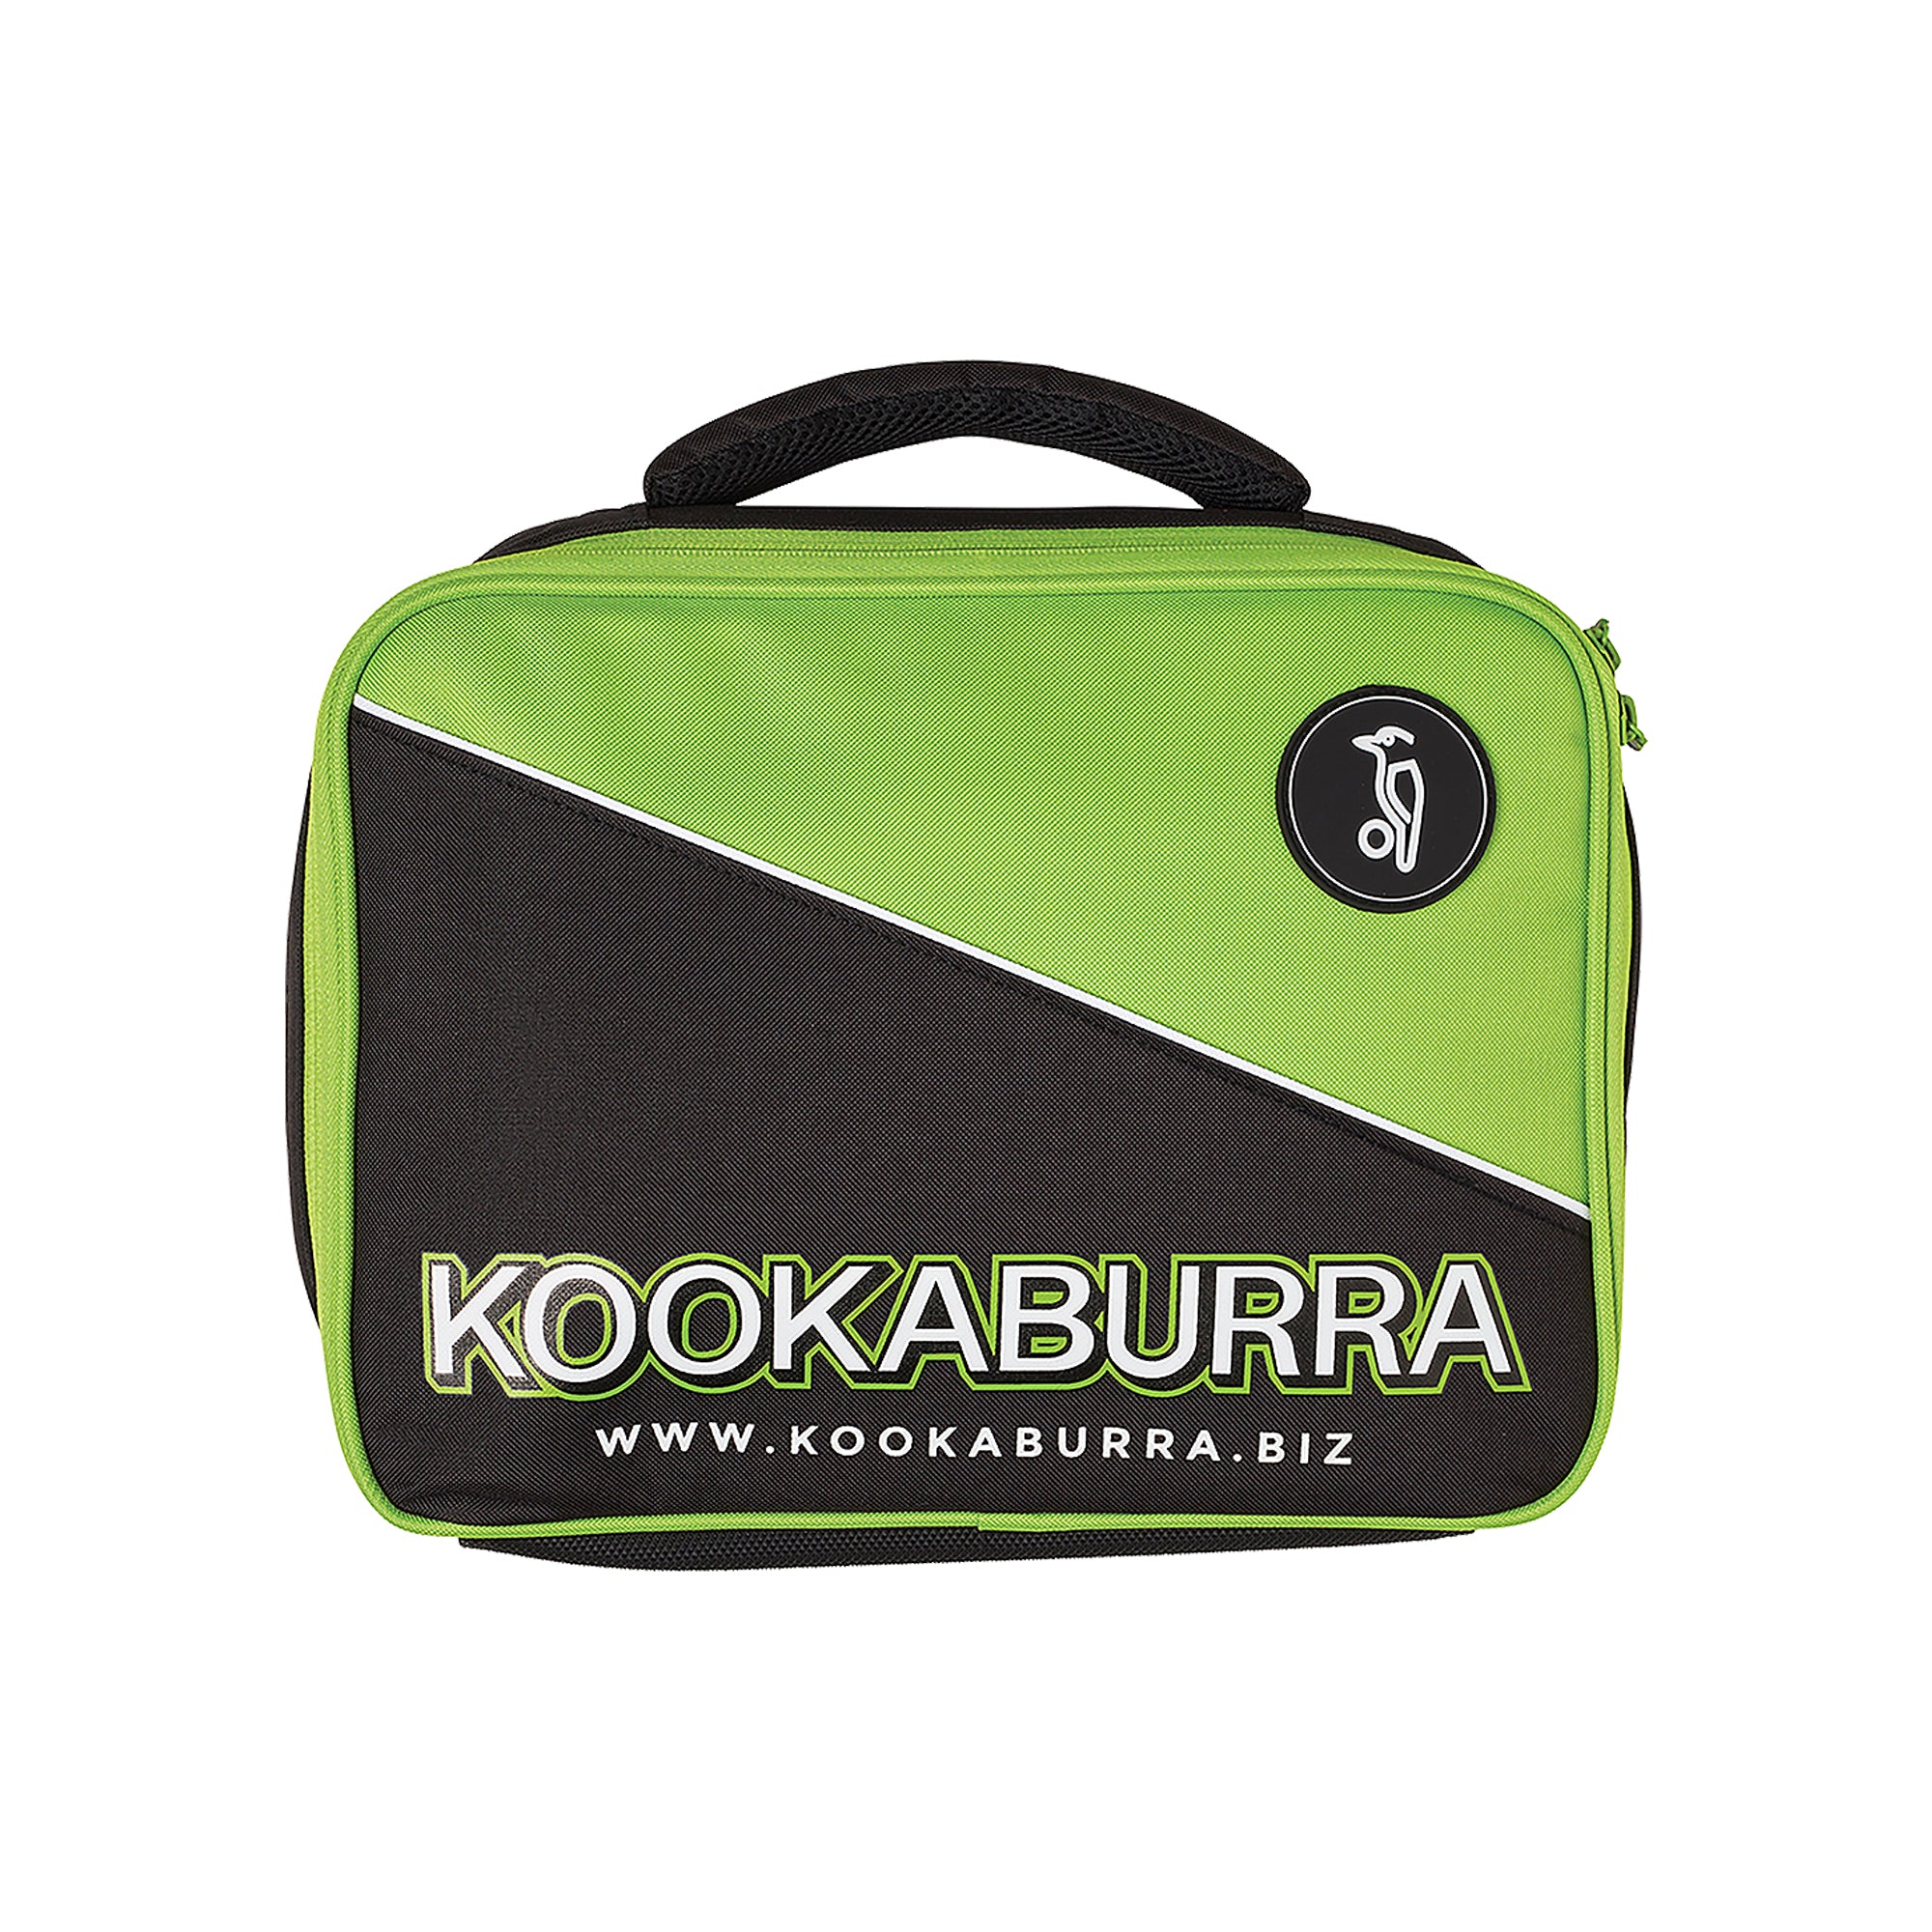 Kookaburra Dozen Ball Carry Case